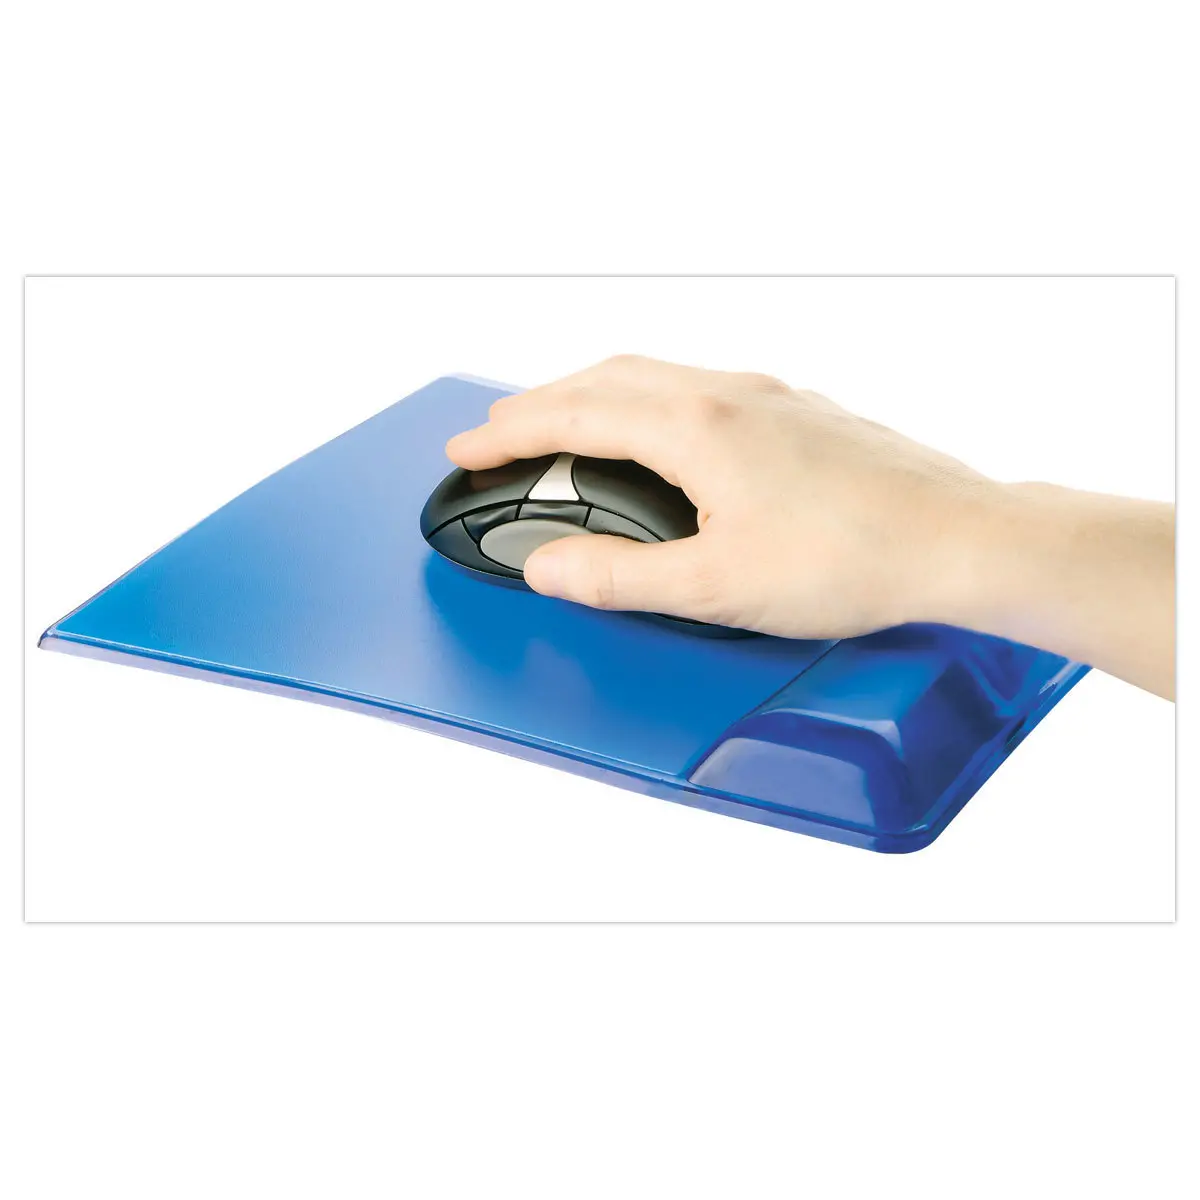 Tapis a souris repose-poignet bleu - Accessoires d'ordinateur